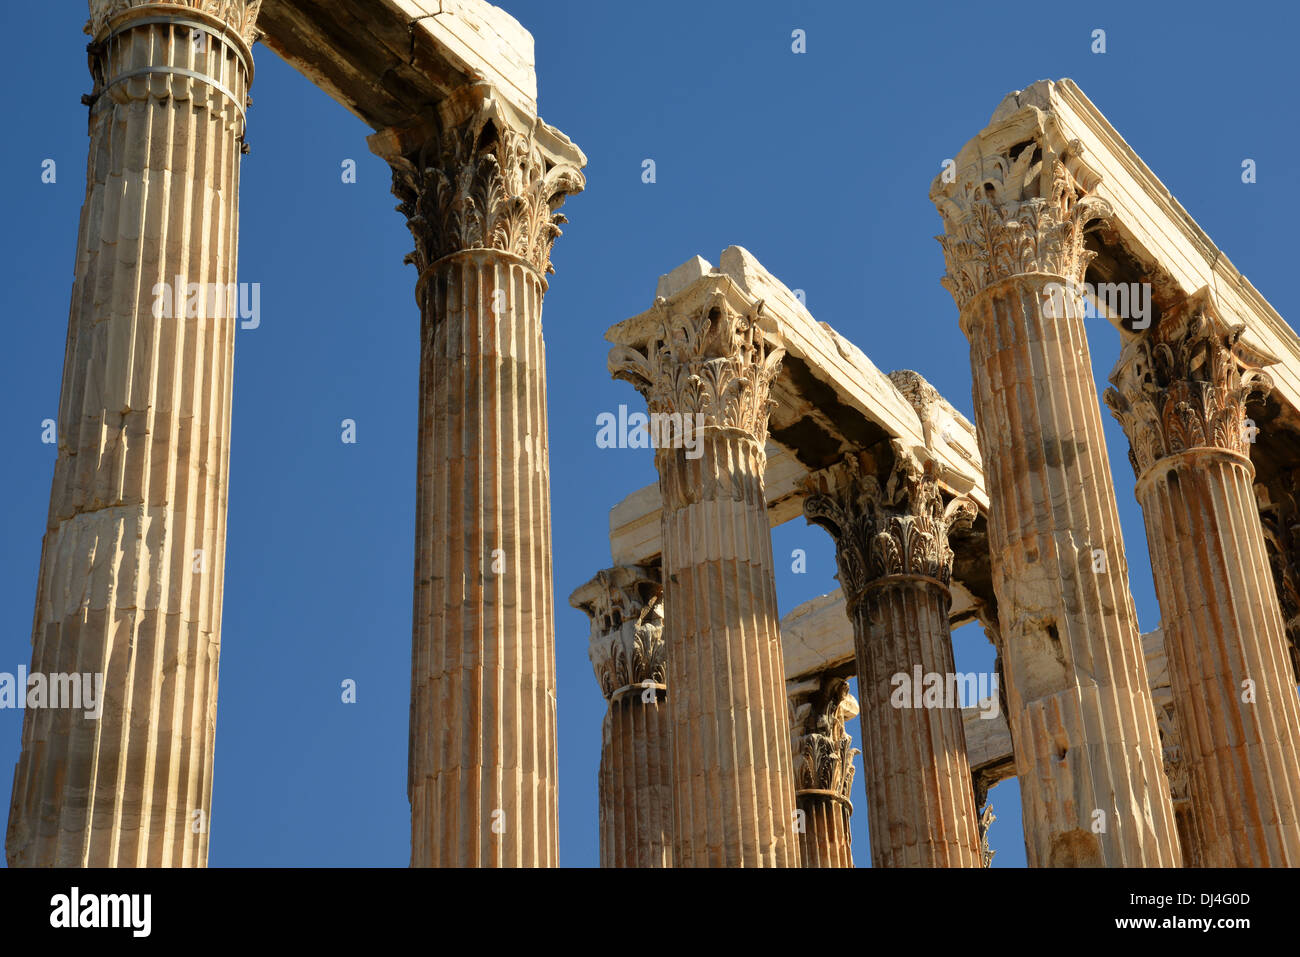 Le colossal temple de Zeus olympien d'Athènes Grèce Banque D'Images